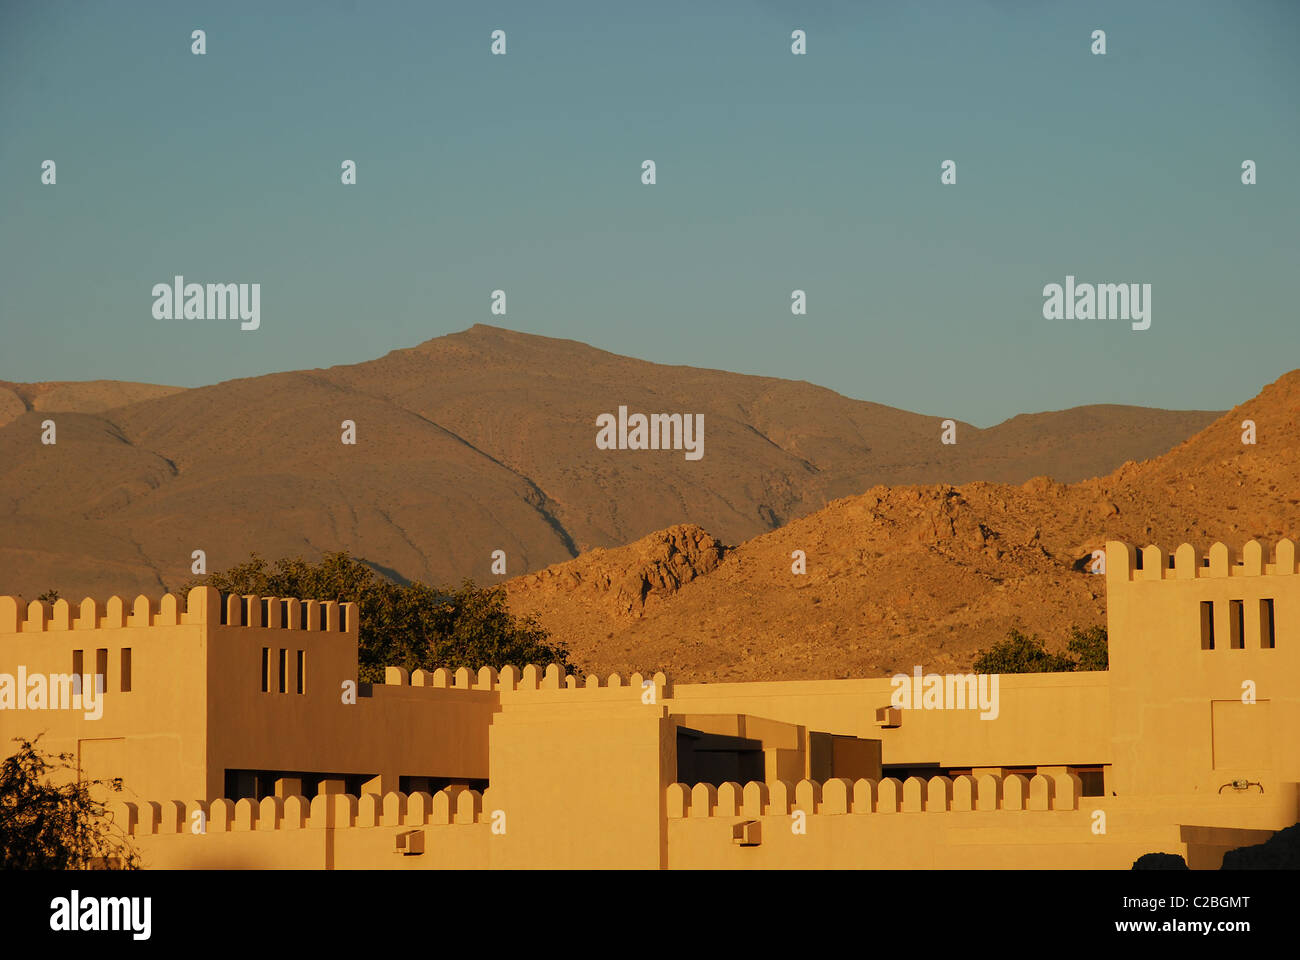 Oman, Nizwa, la vista di vecchi edifici storici nella parte anteriore del mountain contro il cielo blu chiaro Foto Stock